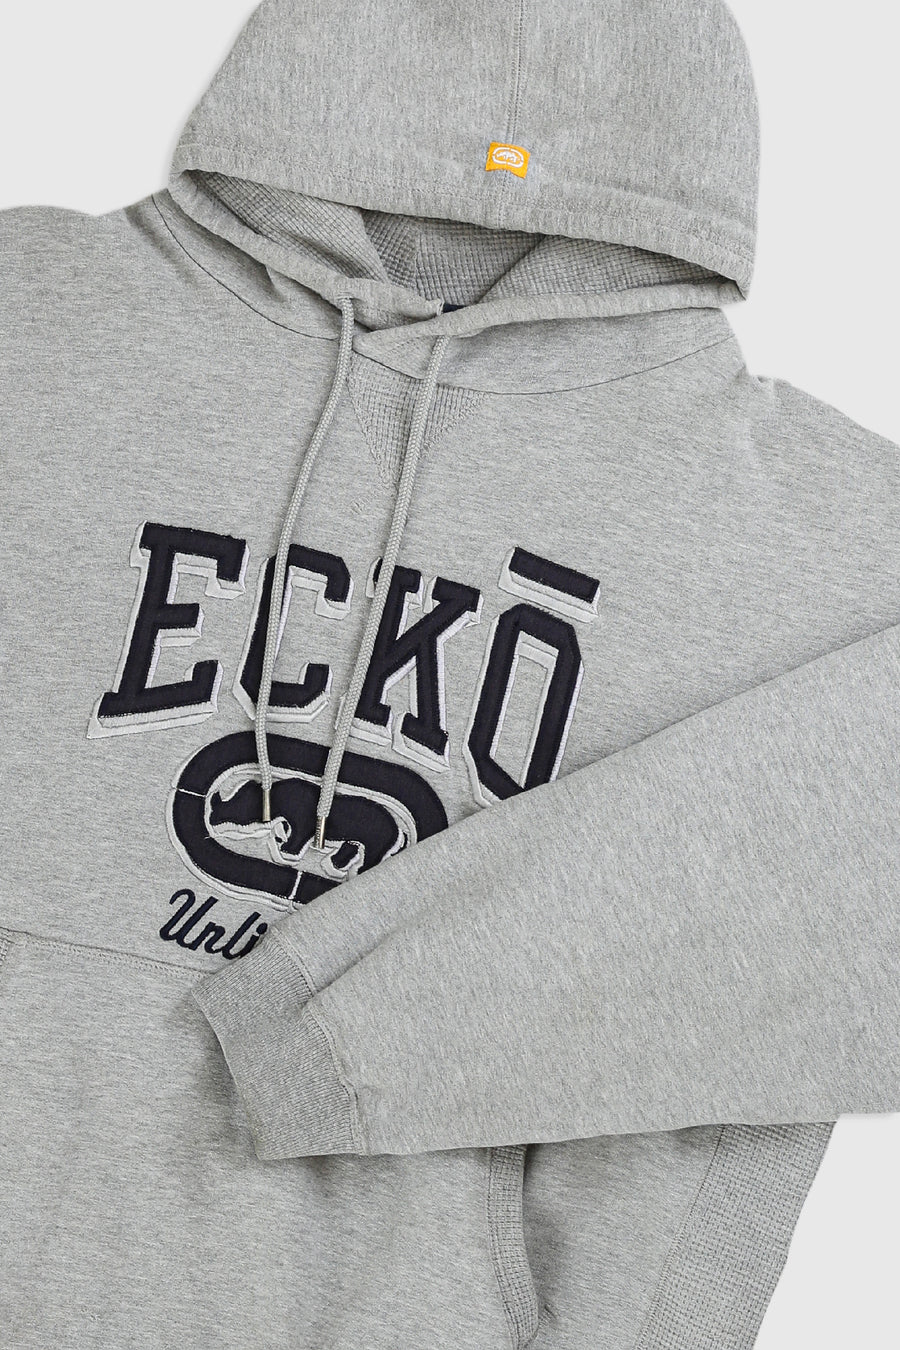 Vintage Ecko Hooded Sweatshirt